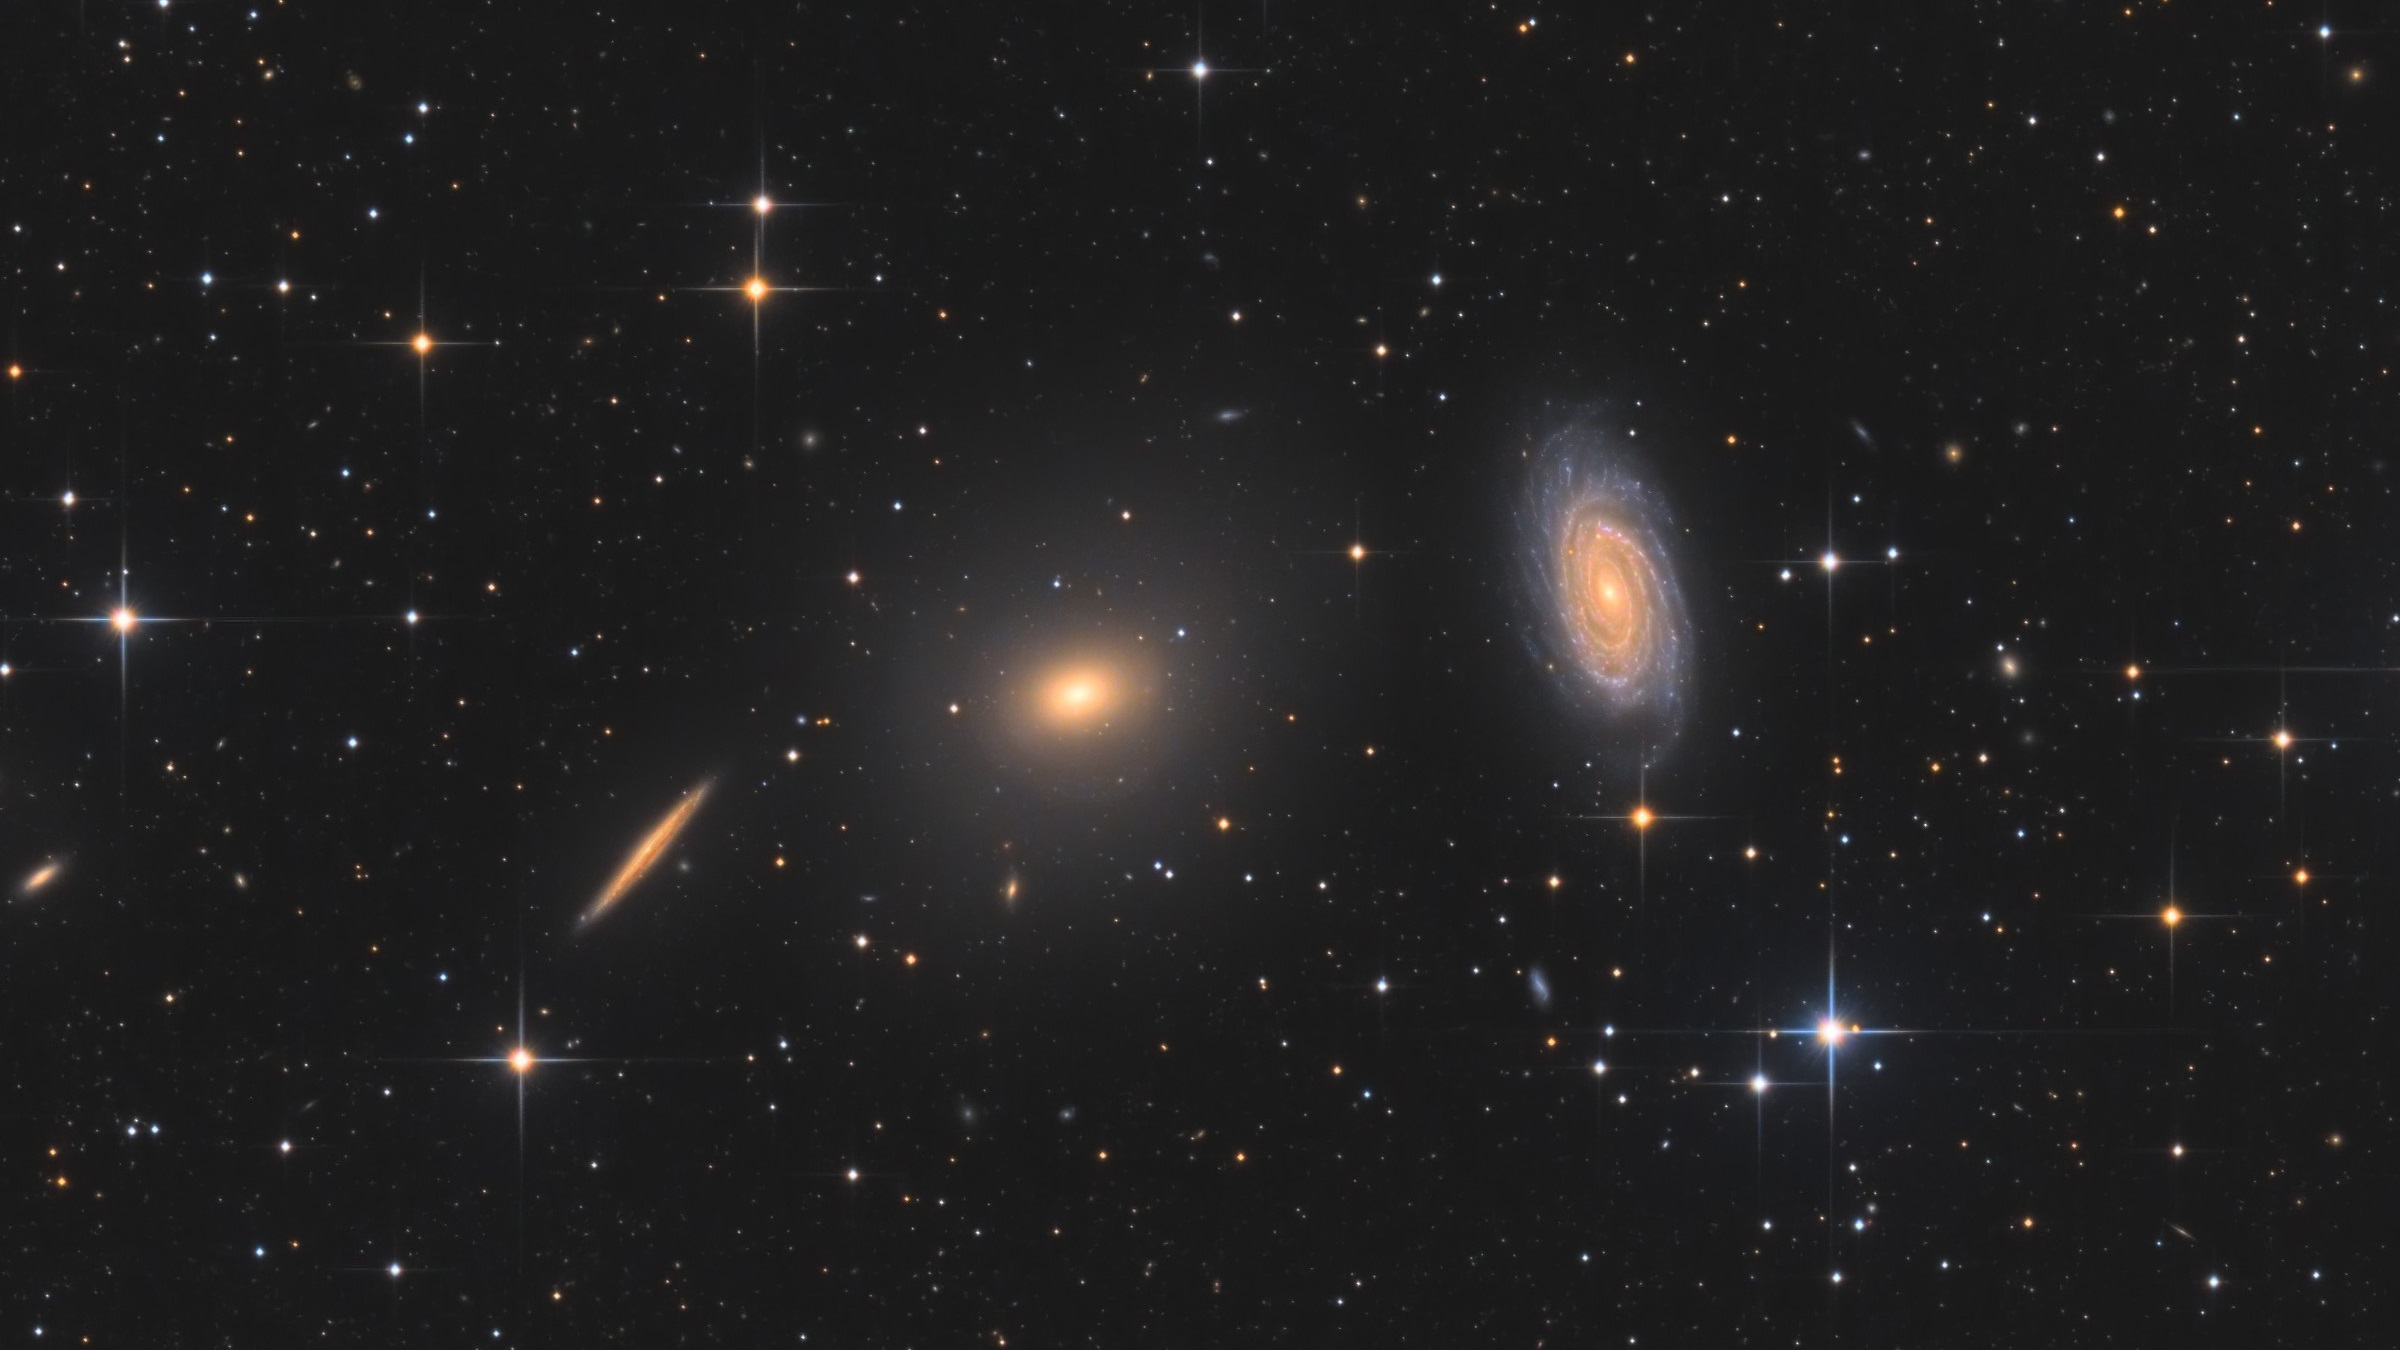 NGC5982